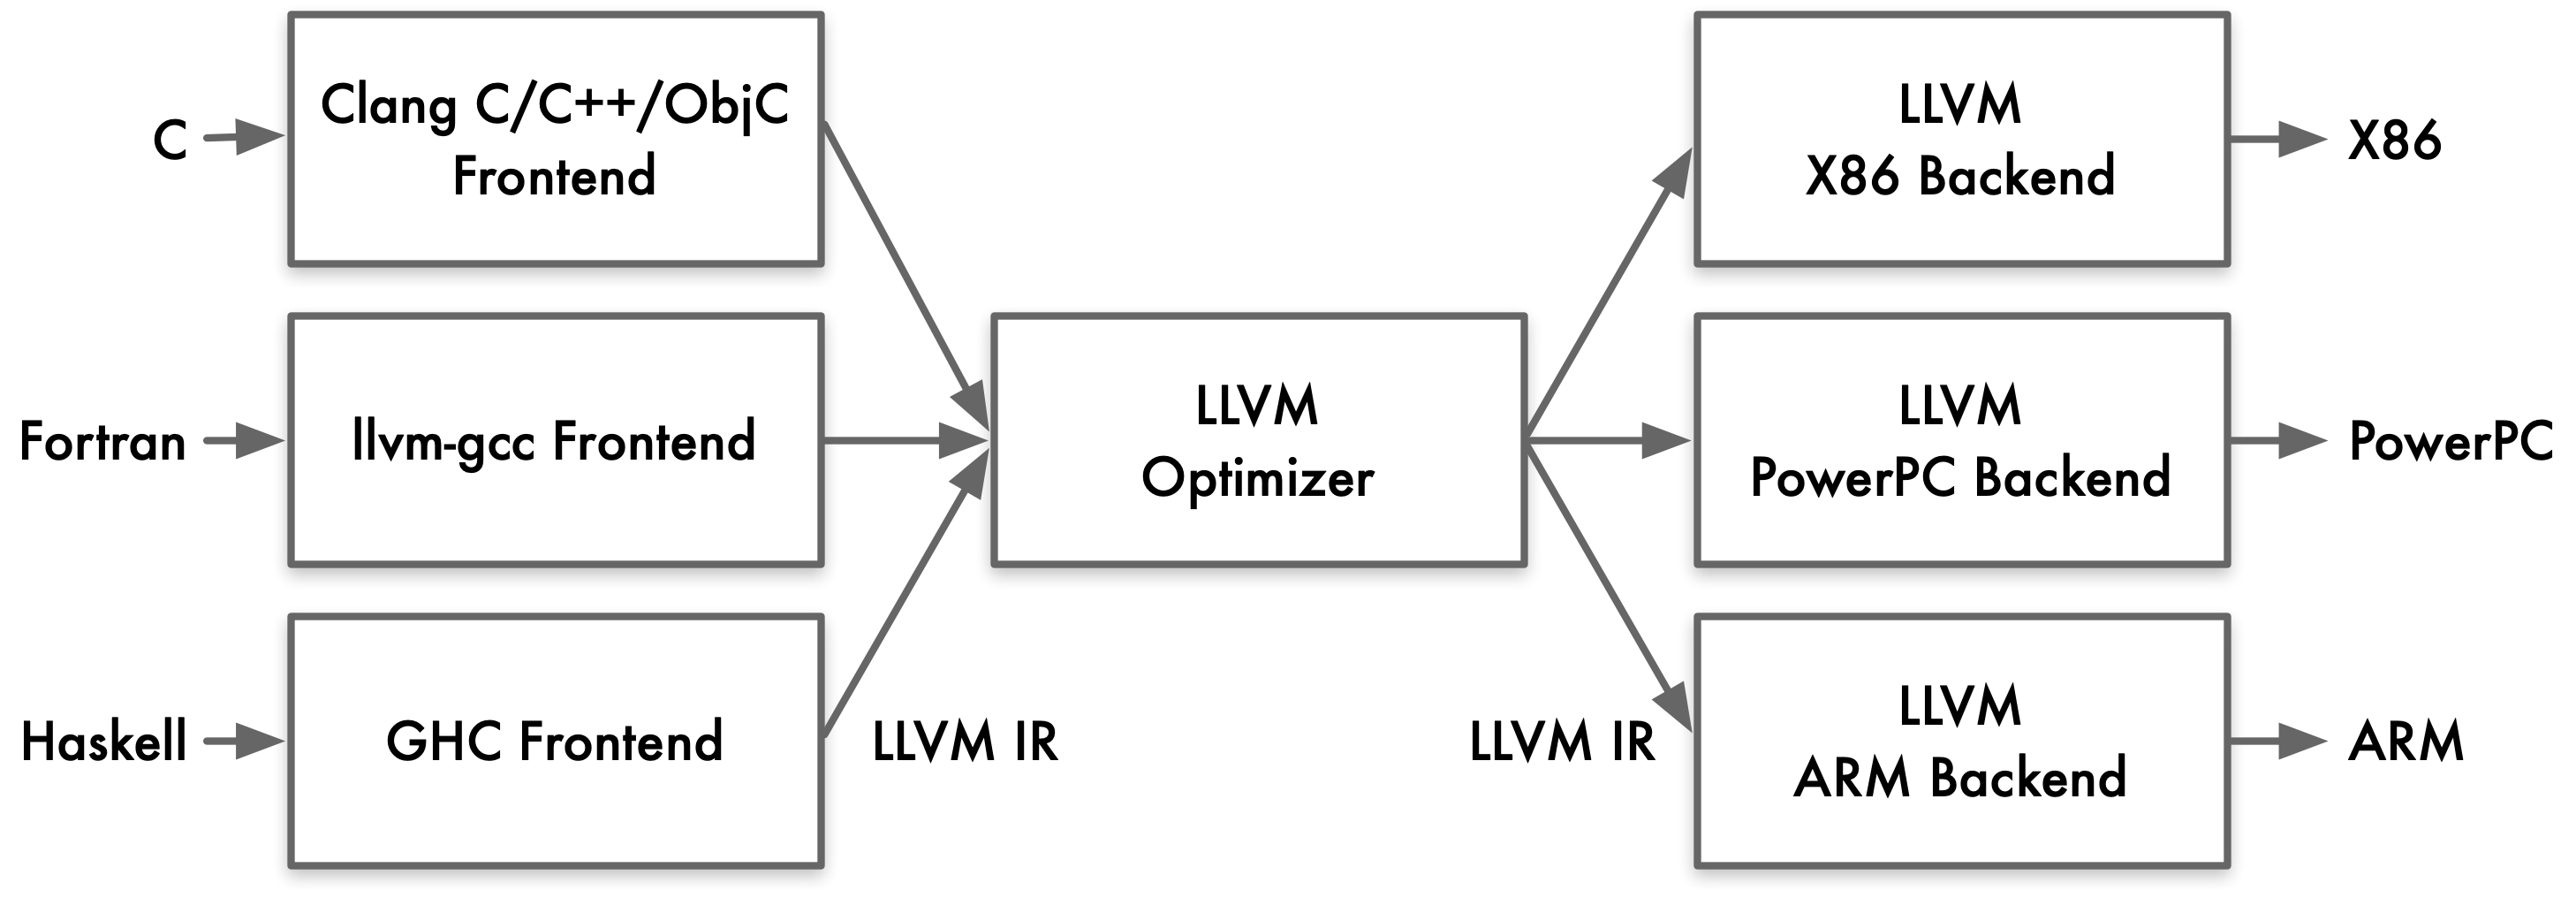 LLVM 架构图中的 IR